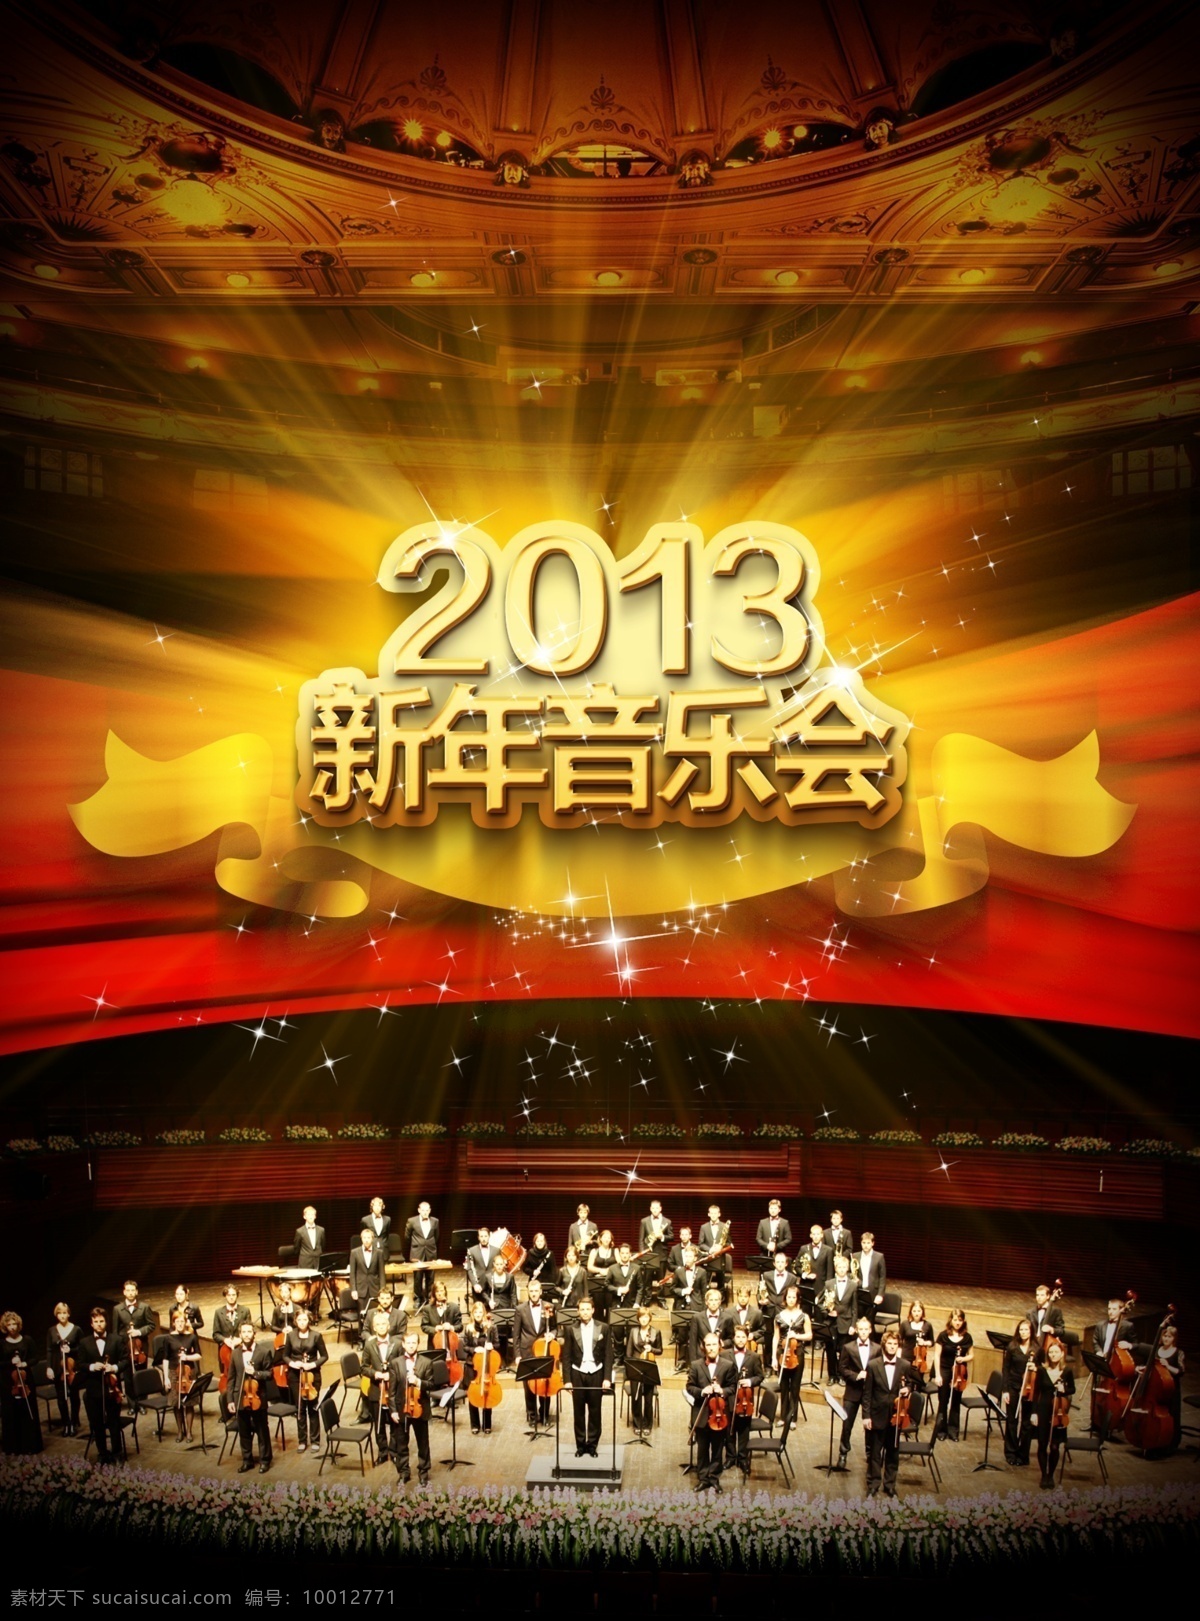 2013 新年 音乐会 海报 音乐 交响乐 合奏大厅 金色大厅 舞台 乐队 广告设计模板 源文件